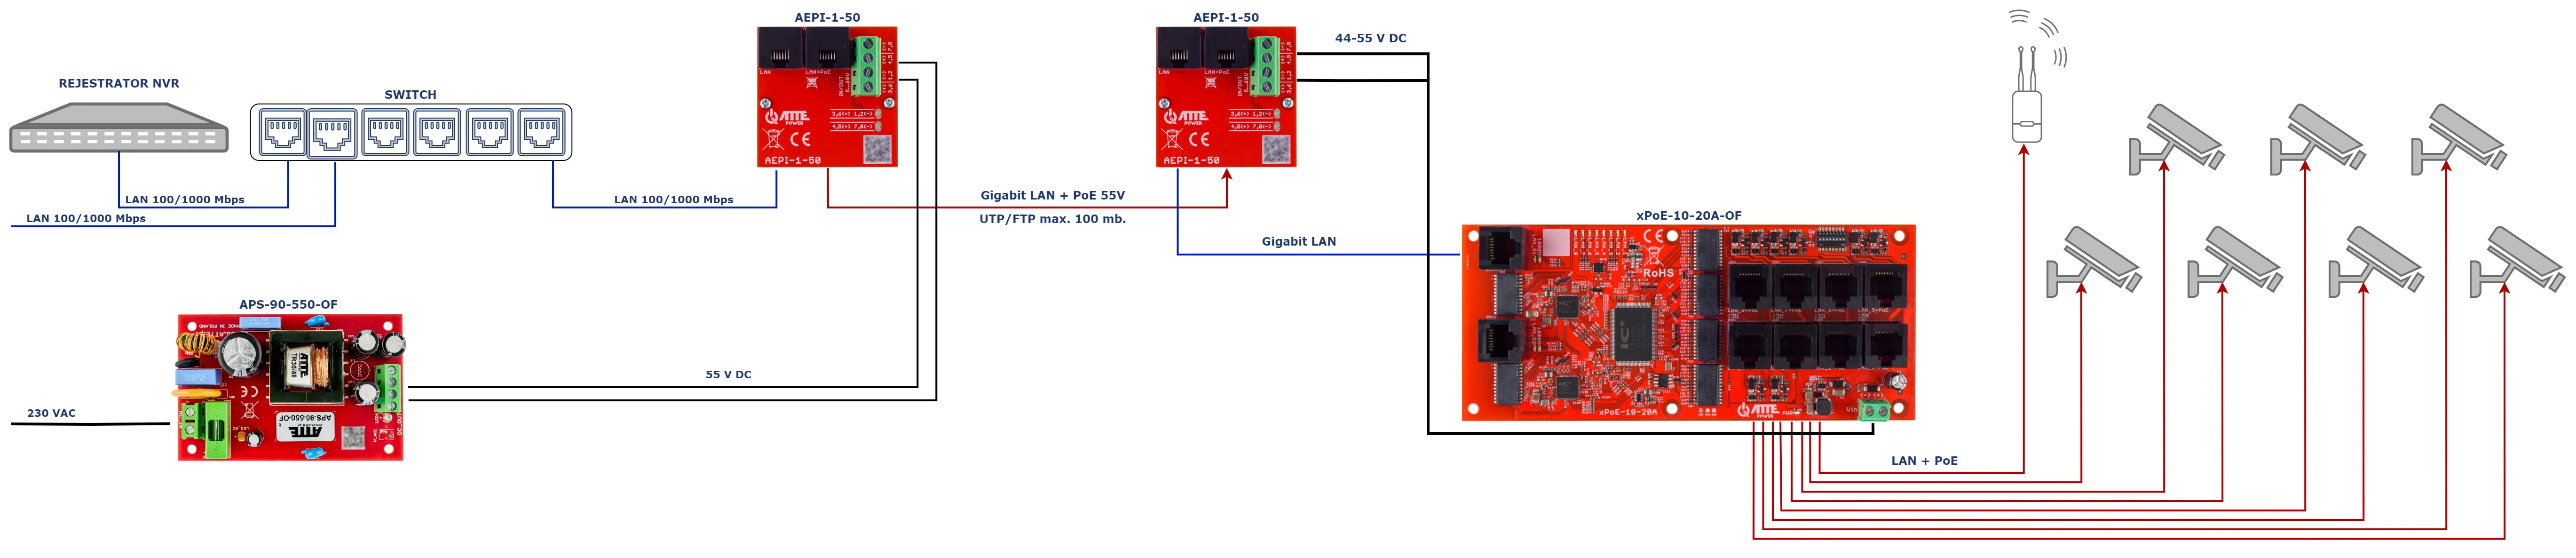 Przykładowe zastosowanie AEPI-1-50 do zasilania i transmisji danych do switcha xPoE-10-20A-OF